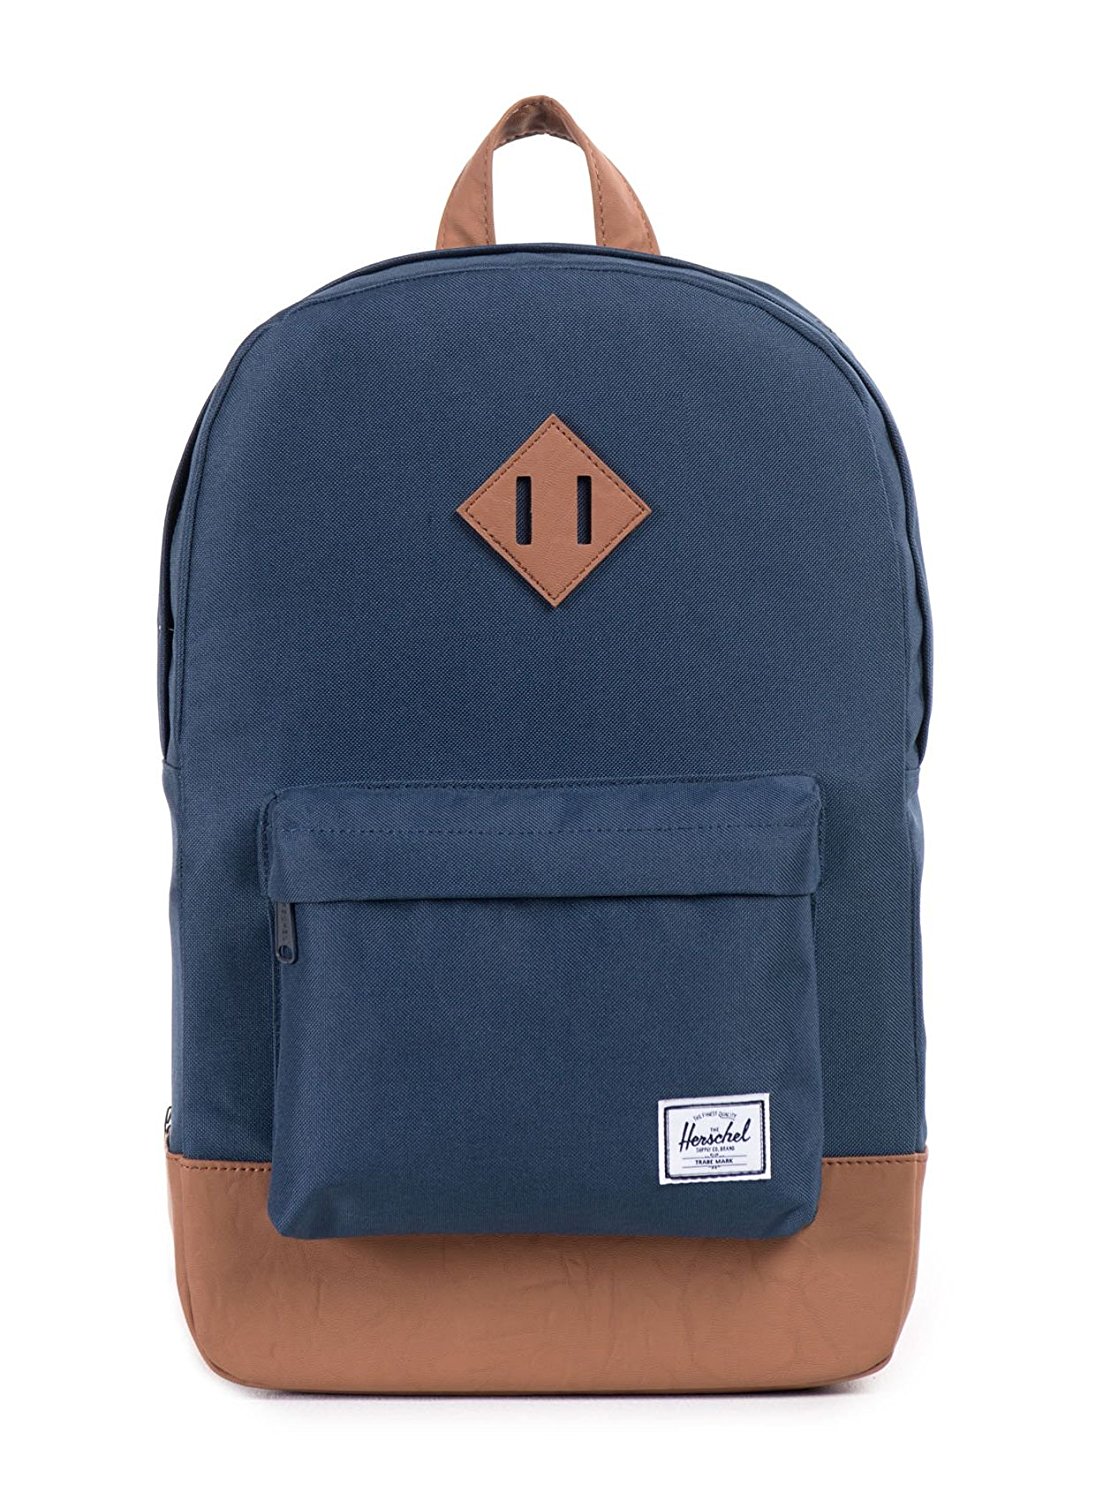 best backpack under $100